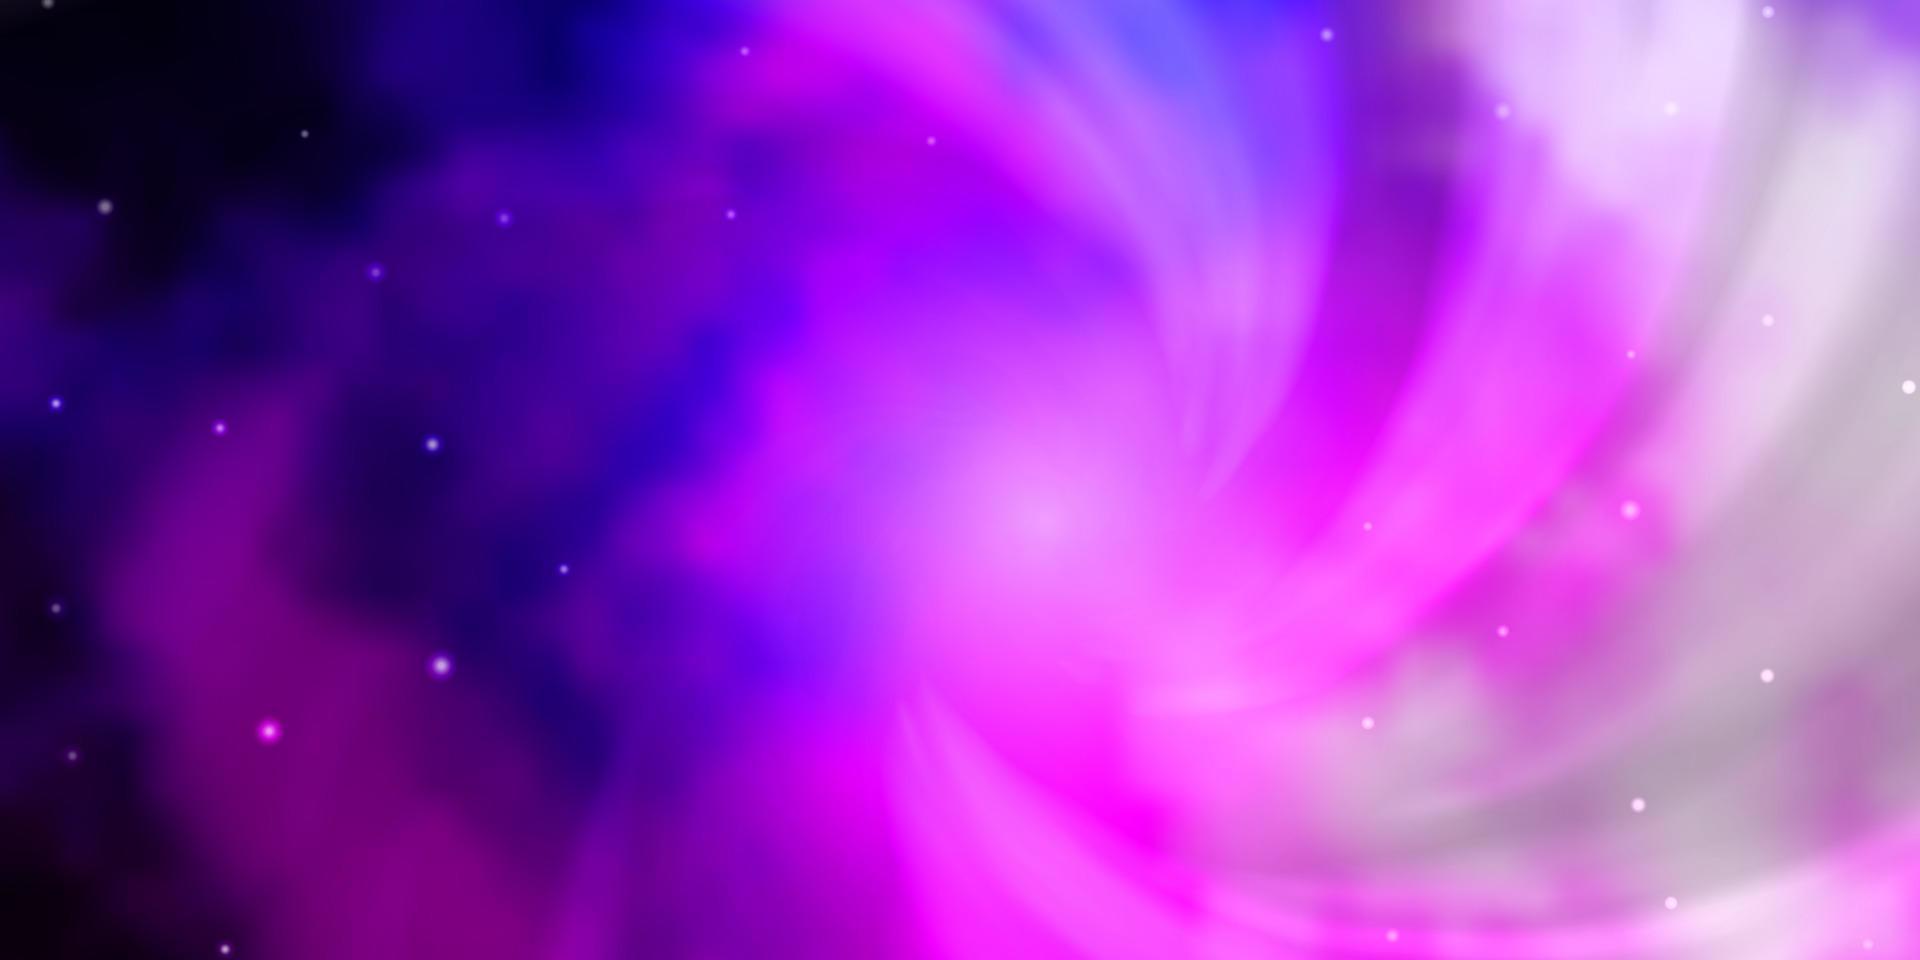 hellpurpurner, rosa Vektorhintergrund mit kleinen und großen Sternen. vektor